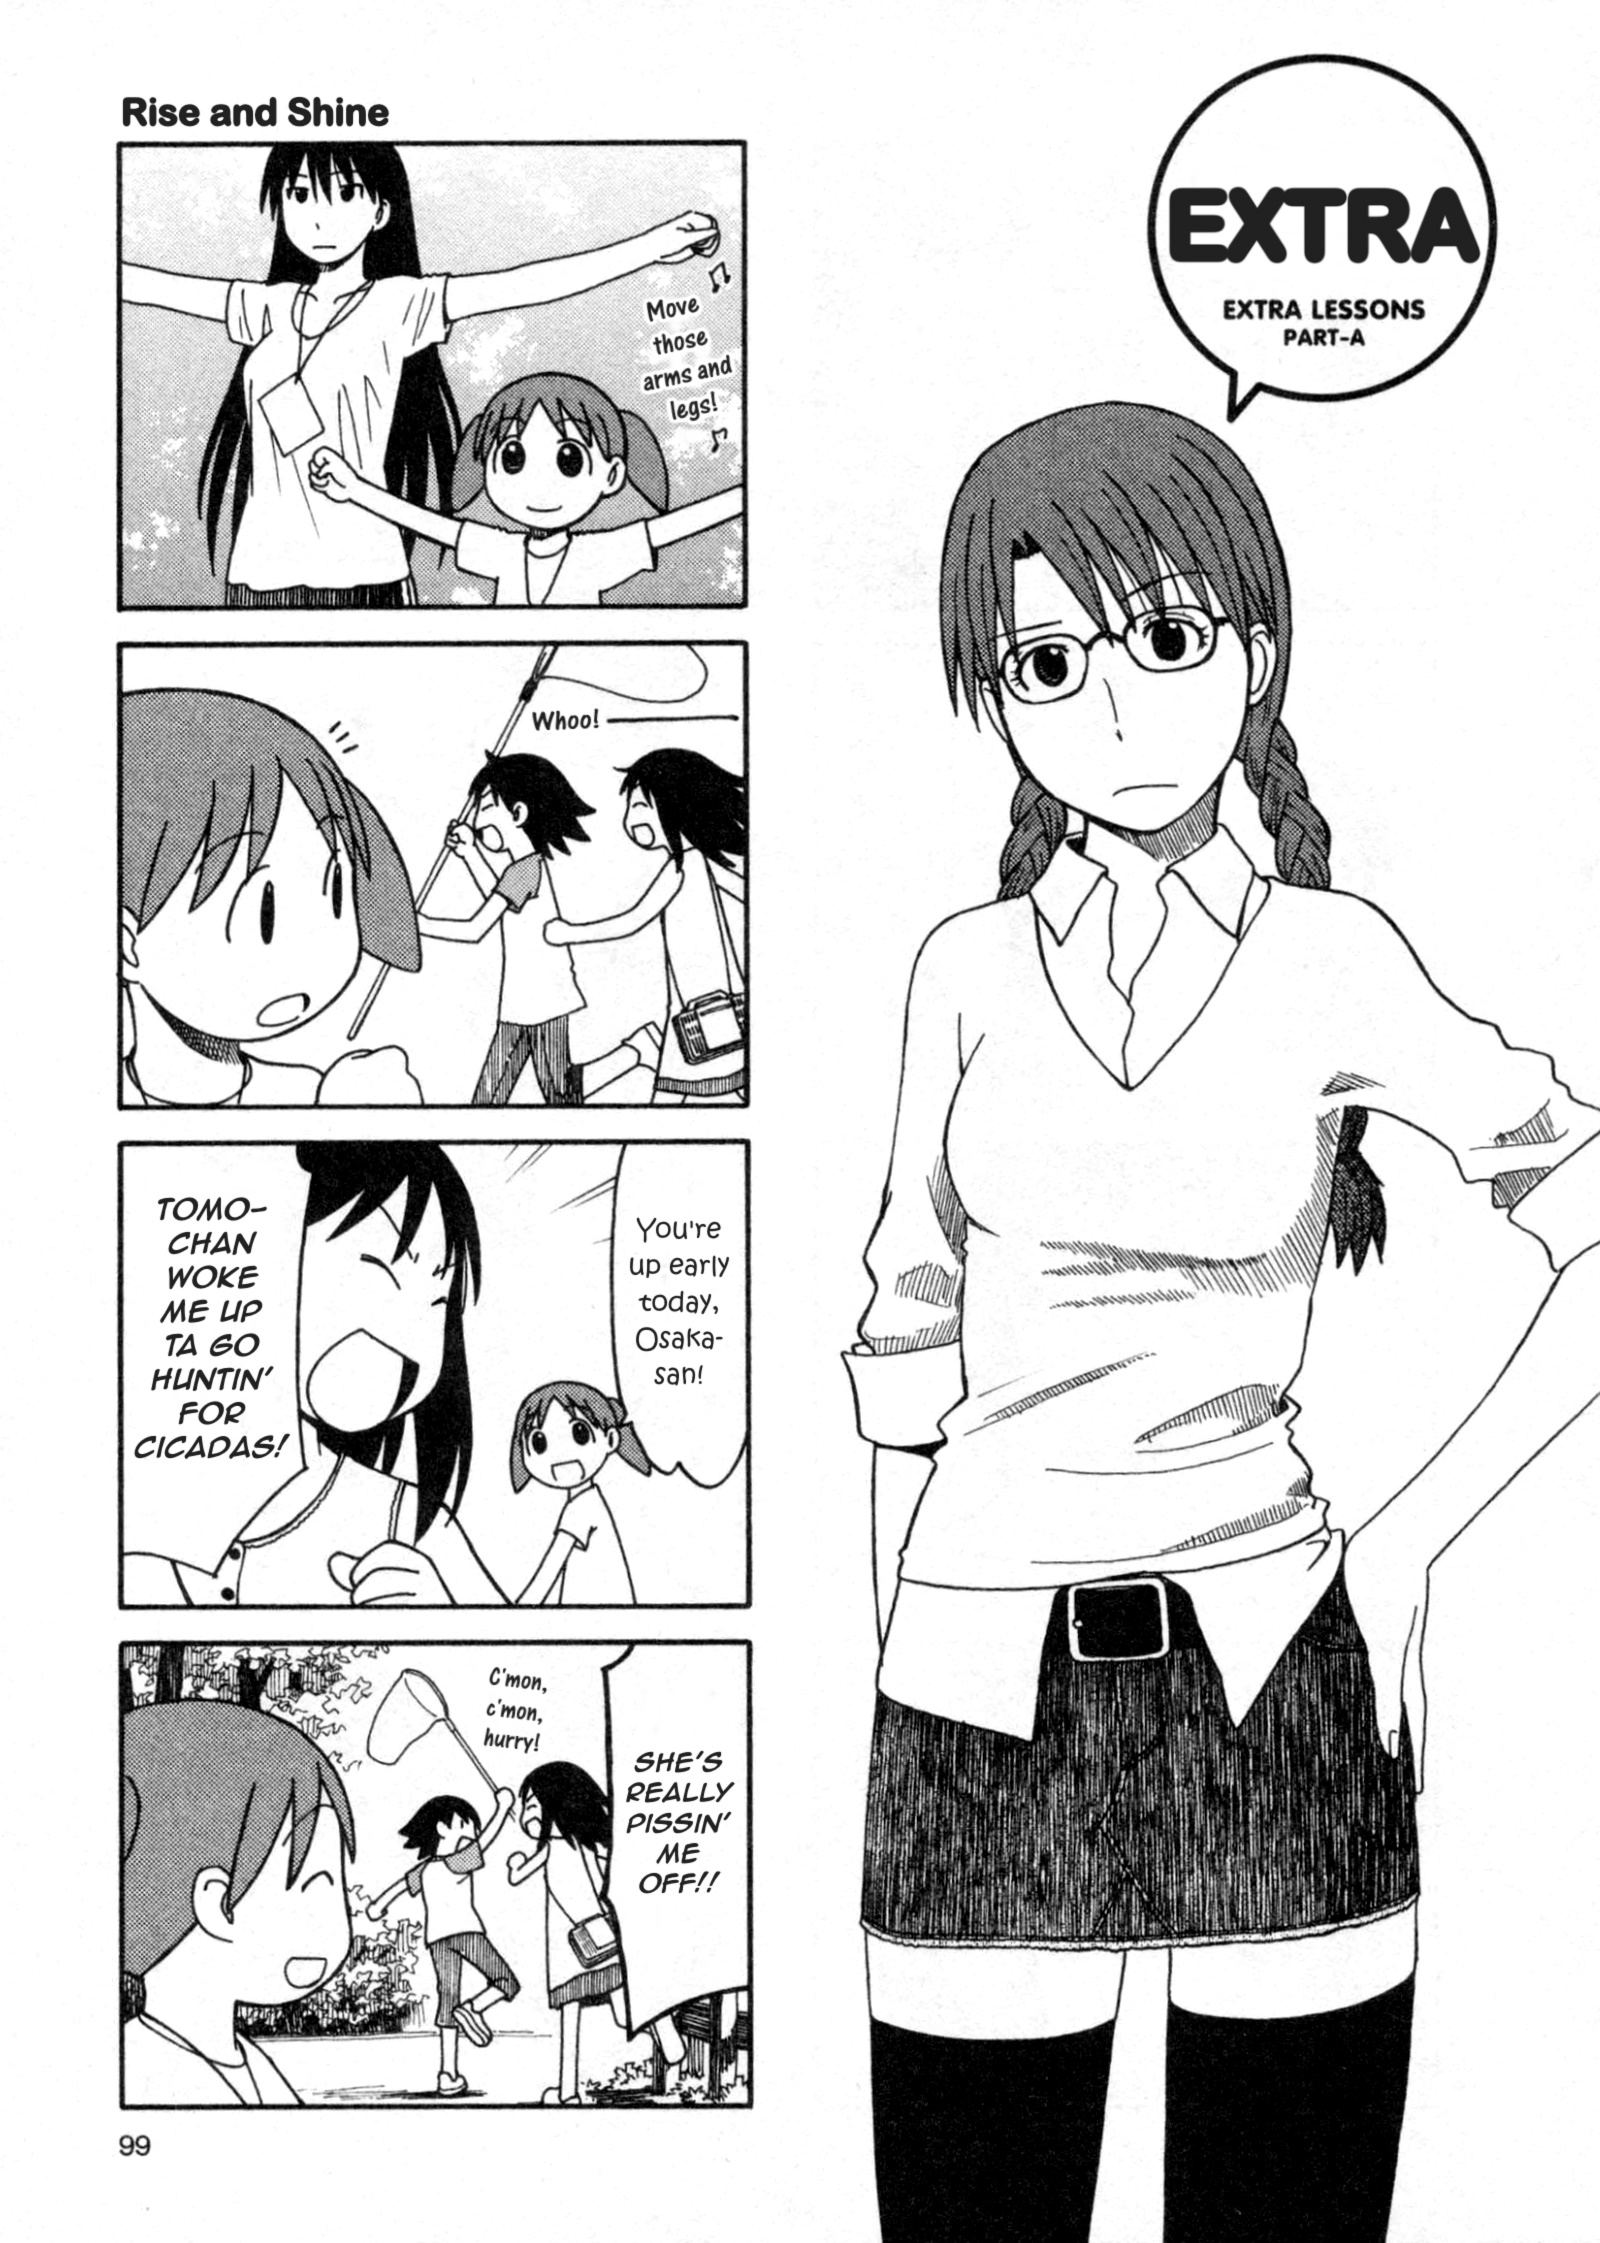 Azumanga Daioh - Page 1